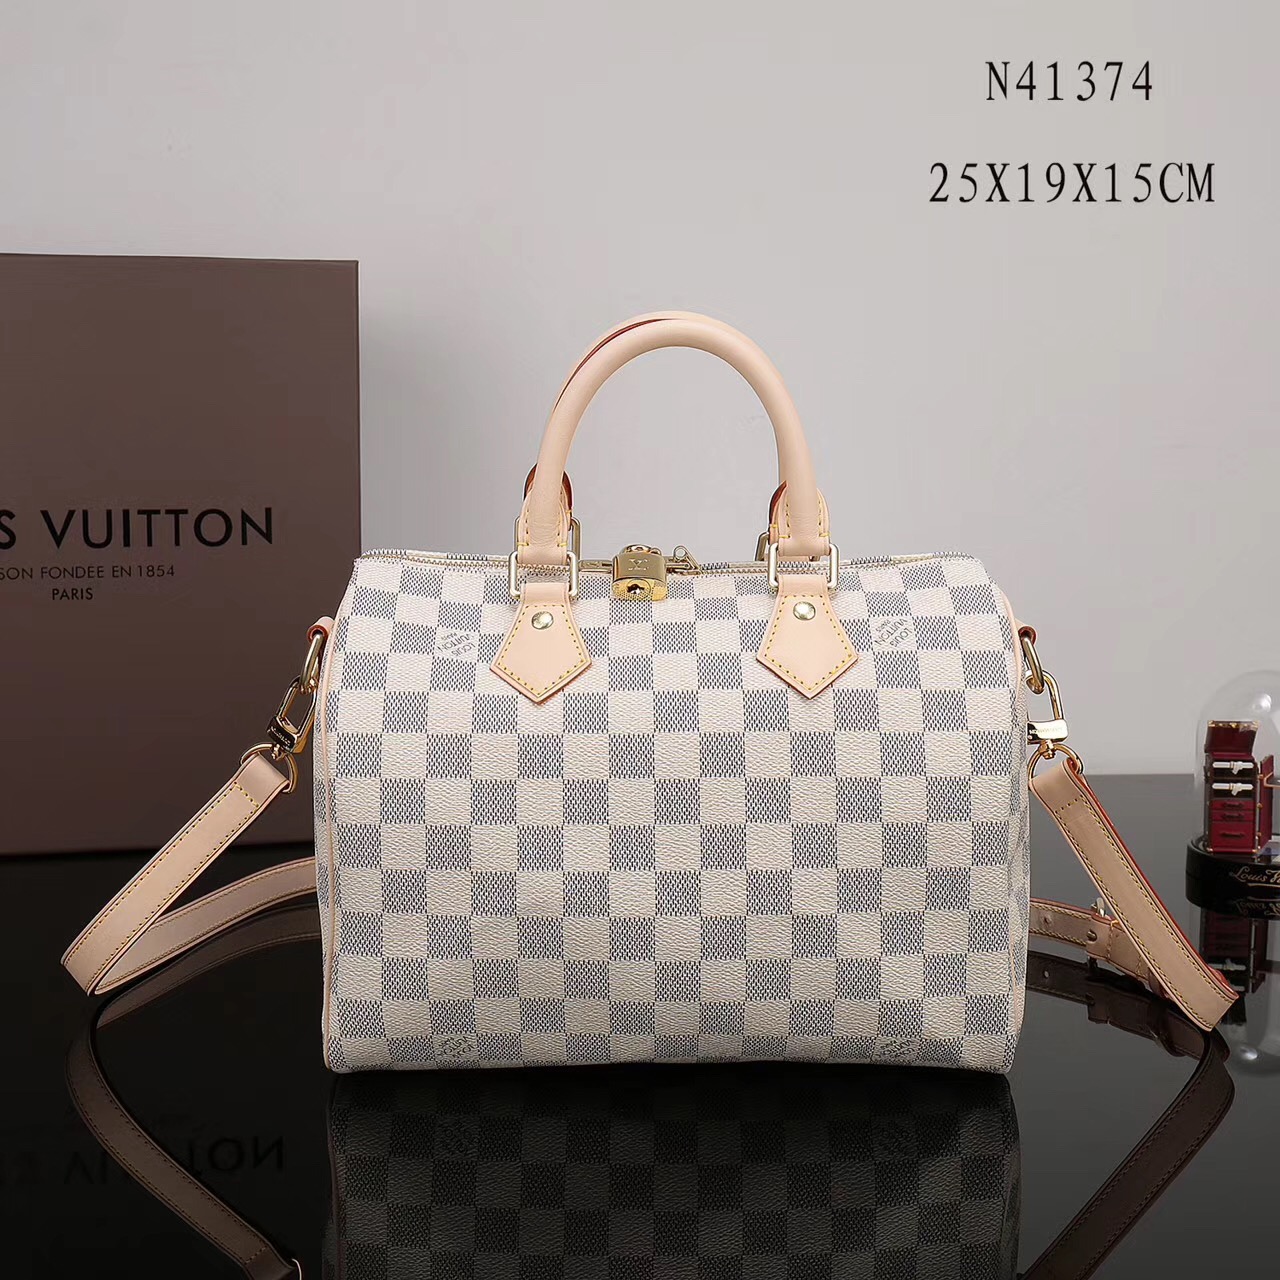 LV Louis Vuitton Speedy 25 Damier bags N41374 Handbags White